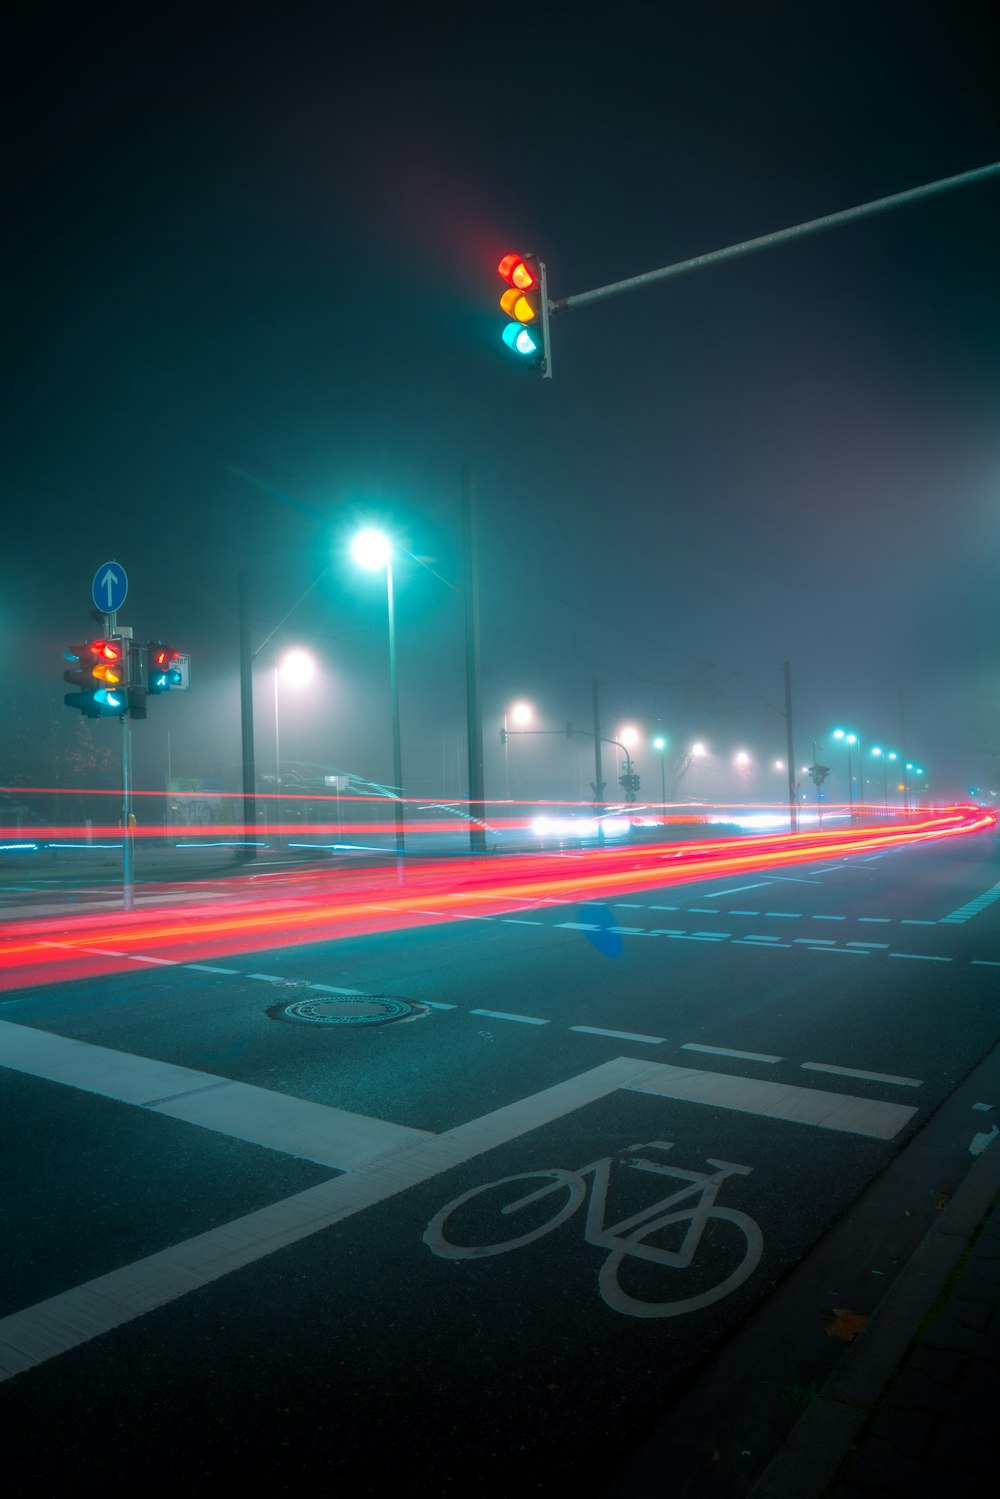 Đường xe đạp ánh sáng ban đêm sẽ mang lại cho bạn một cảm giác thật mới lạ và độc đáo. Hãy cùng xem ngay hình ảnh này để đưa mình vào không gian sôi động, năng động và thú vị nhất.